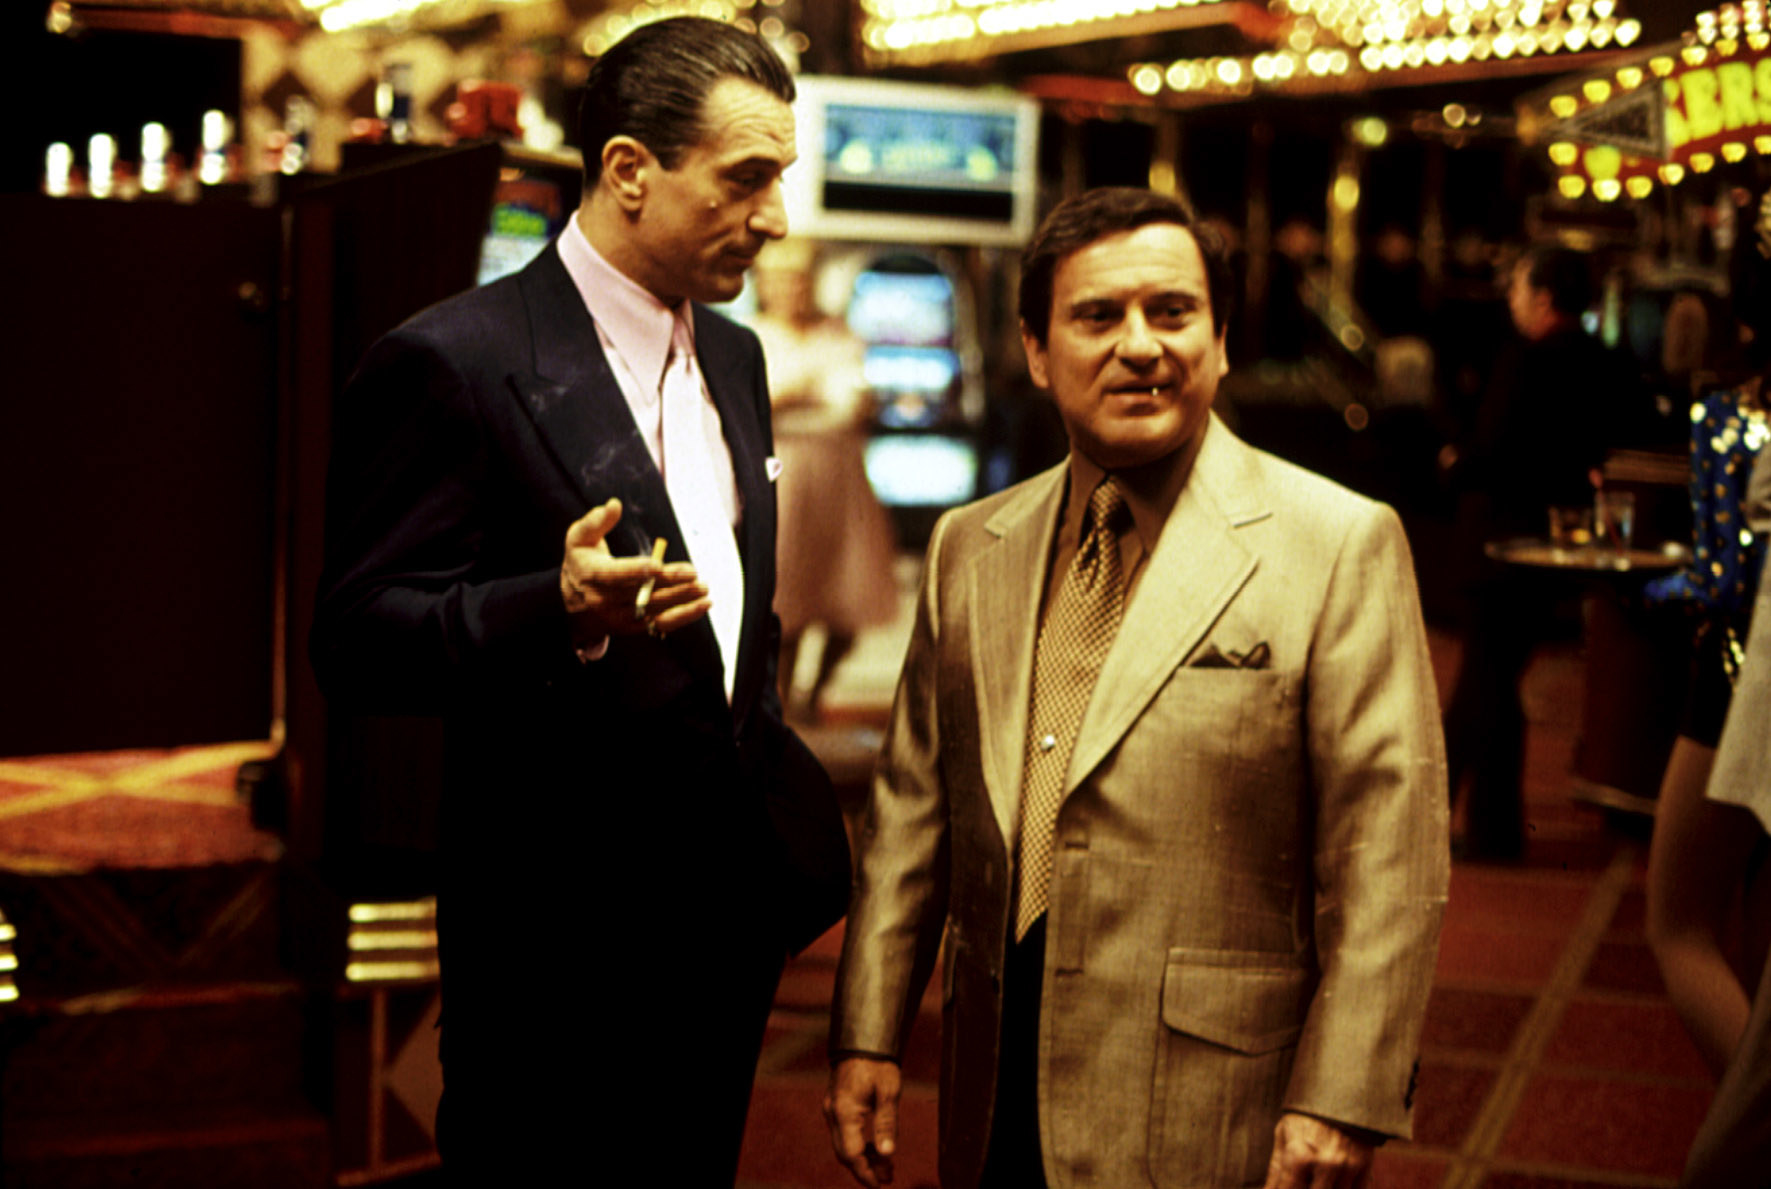 Robert De Niro talking to Joe Pesci in a casino.